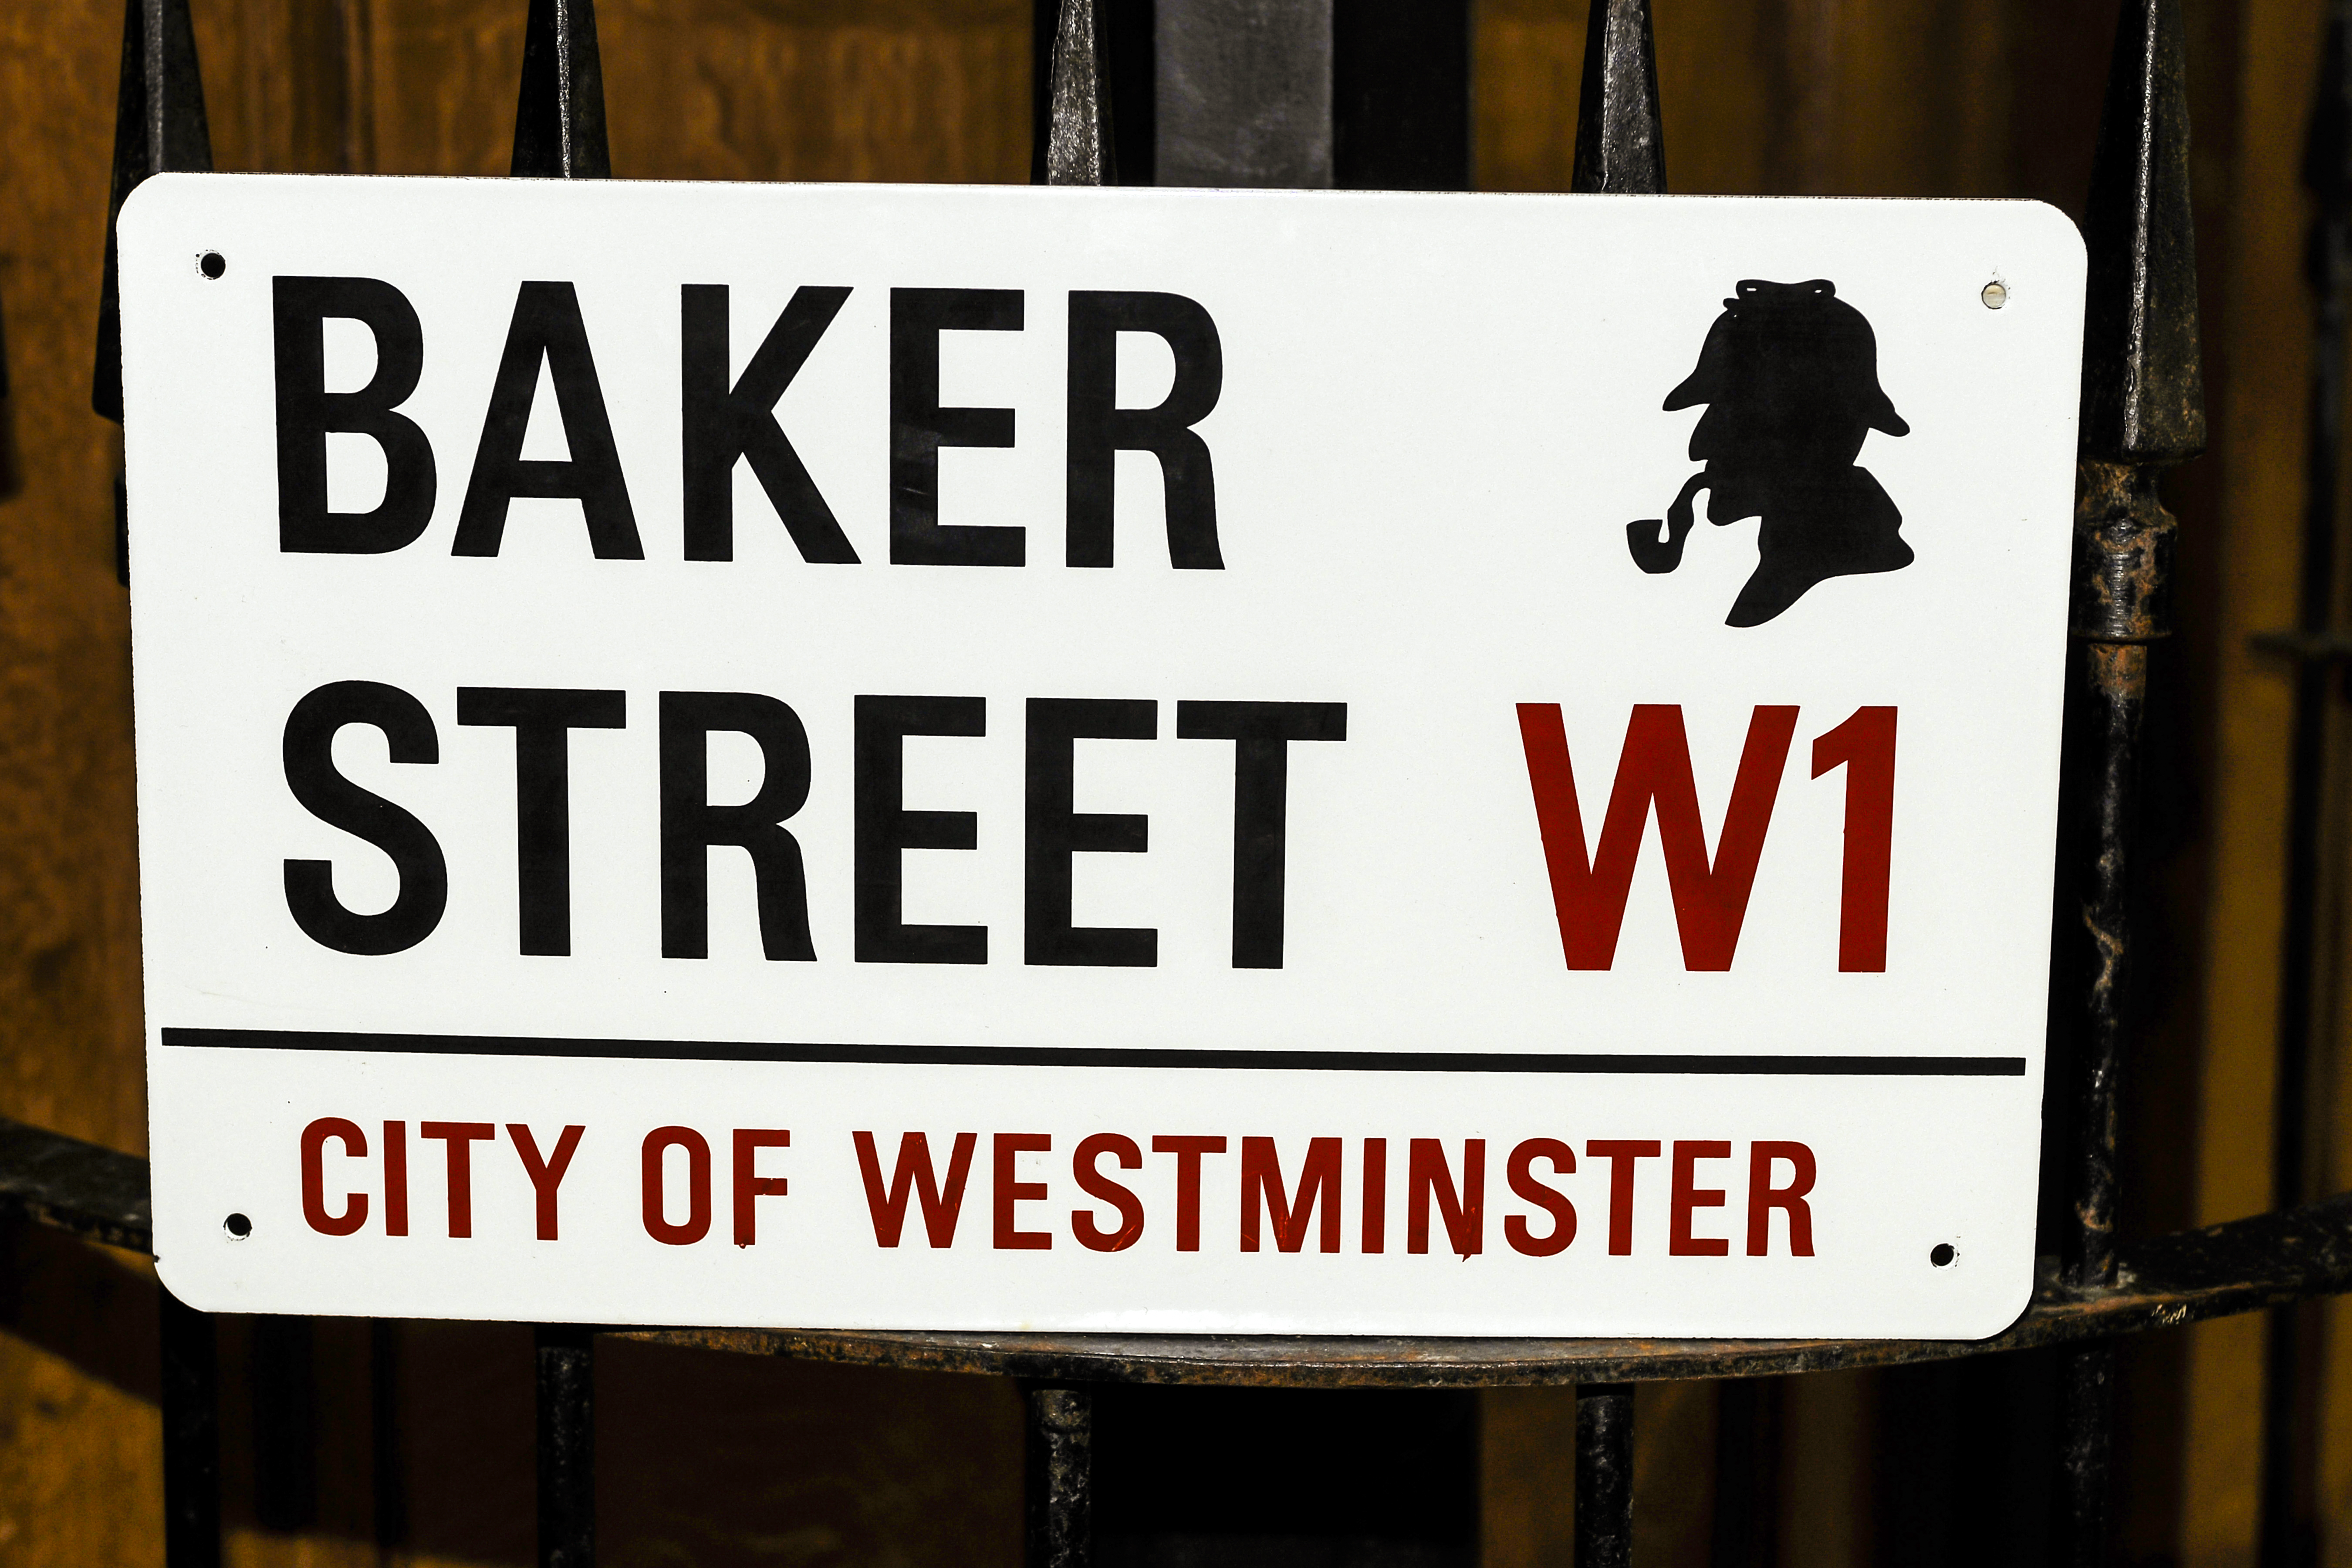 Baker Street sign